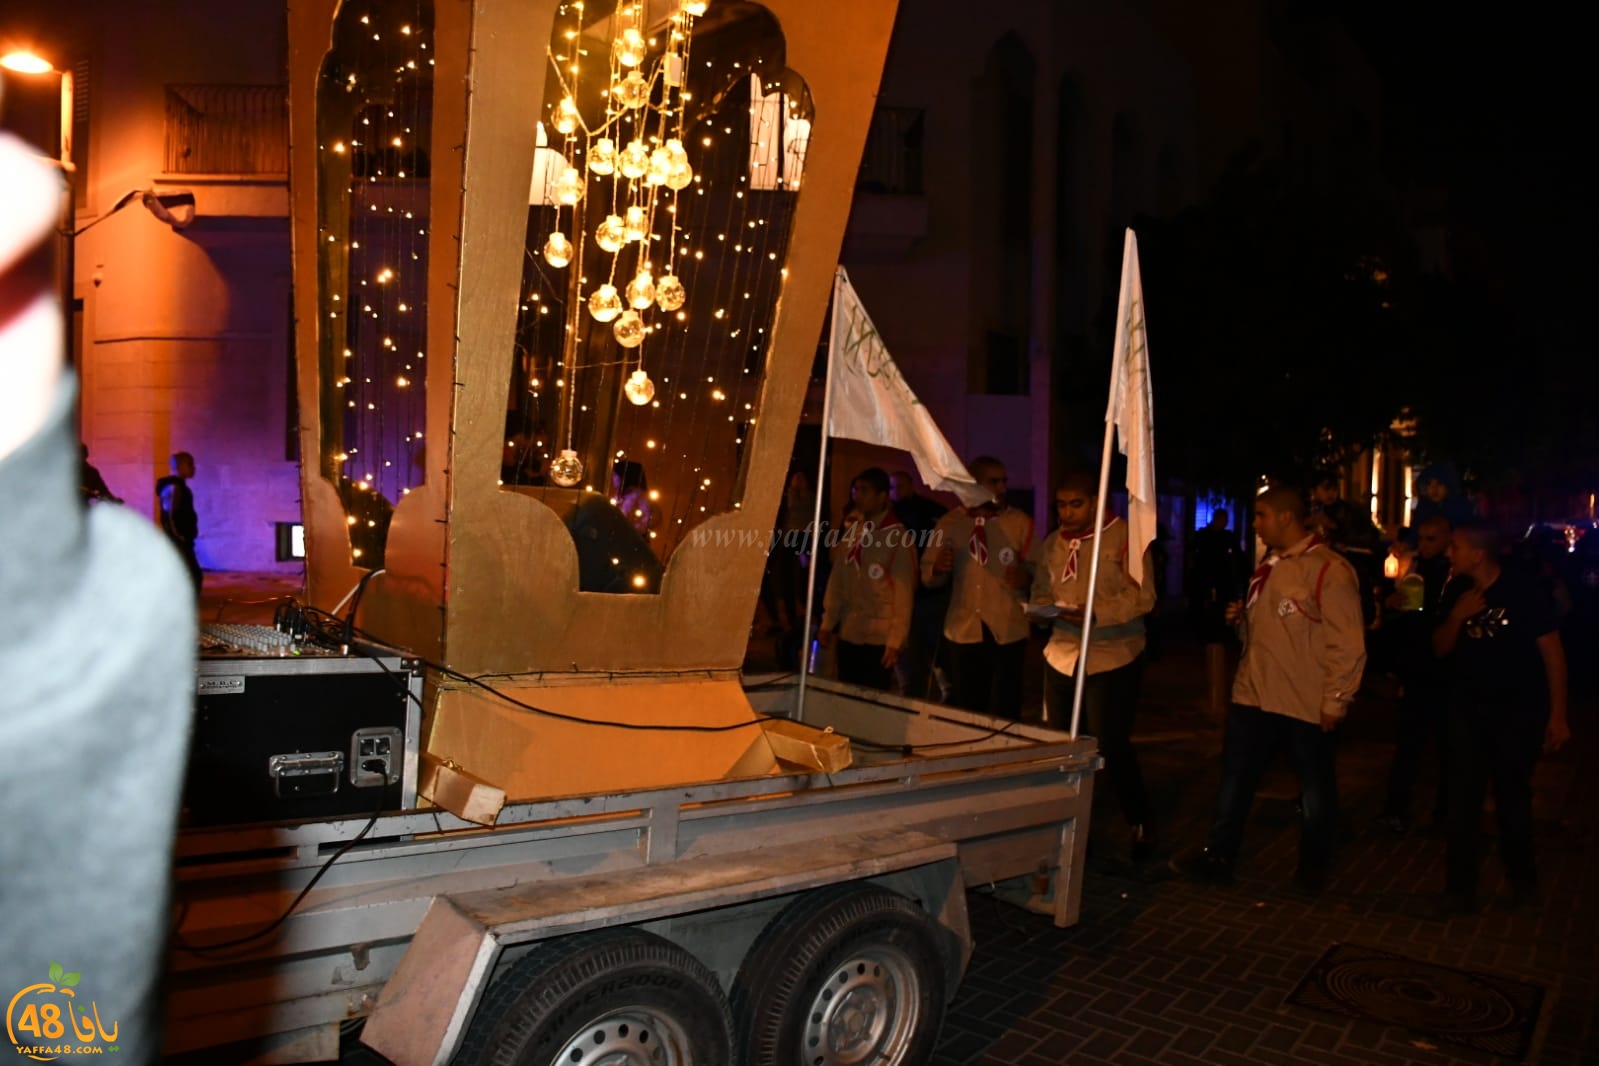  بالفيديو: مسيرة احتفالية في مدينة يافا بمناسبة حلول شهر رمضان المبارك